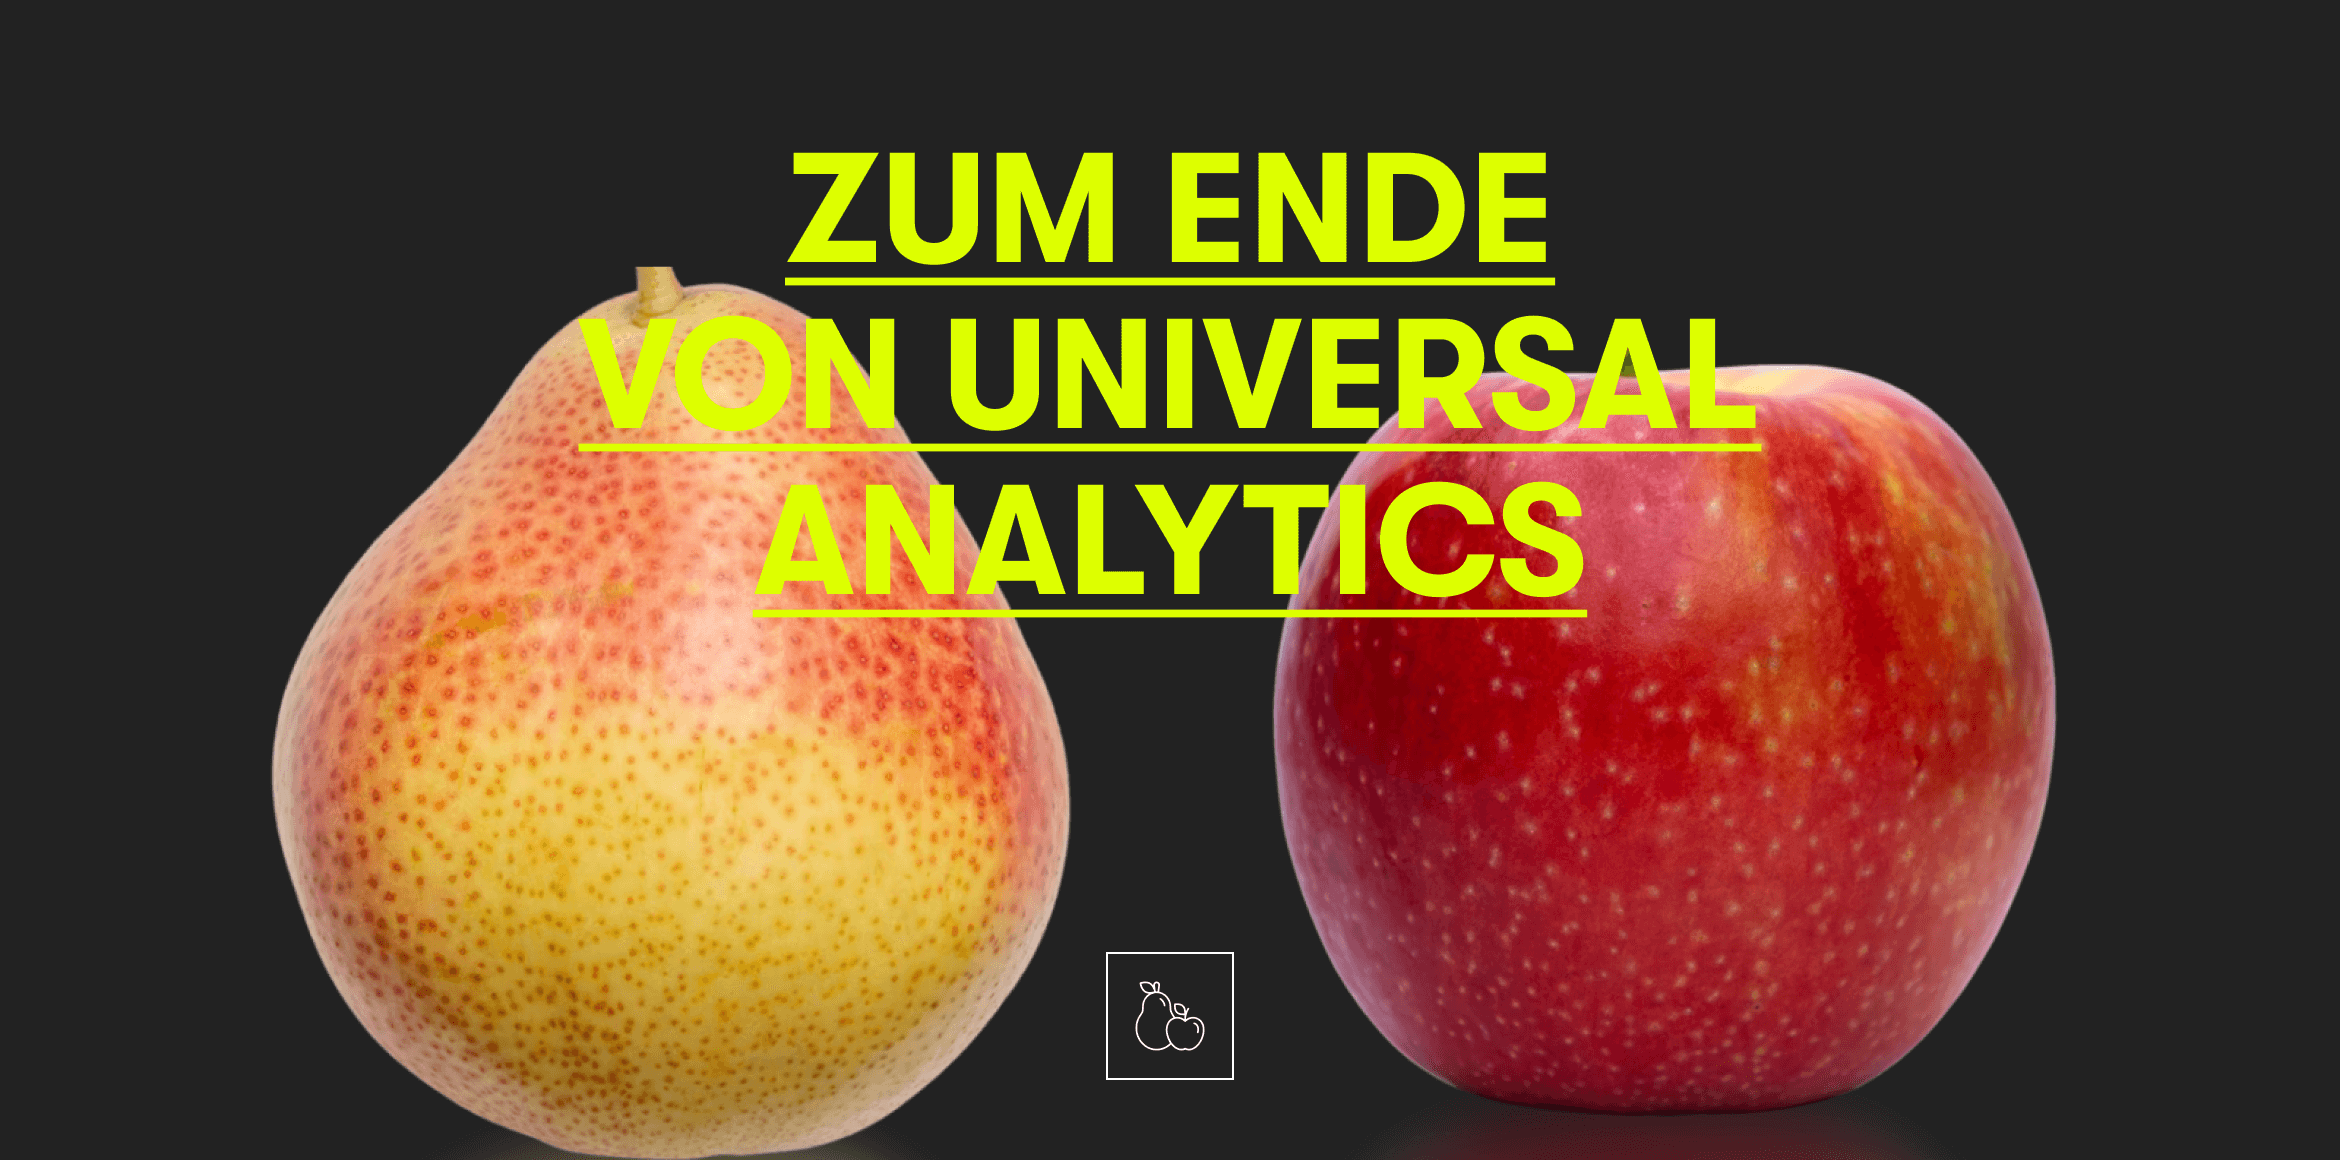 Eine Birne und ein Apfel stehen nebeneinander vor einem schwarzen Hintergrund. Davor steht: Zum Ende von Universal Analytics.